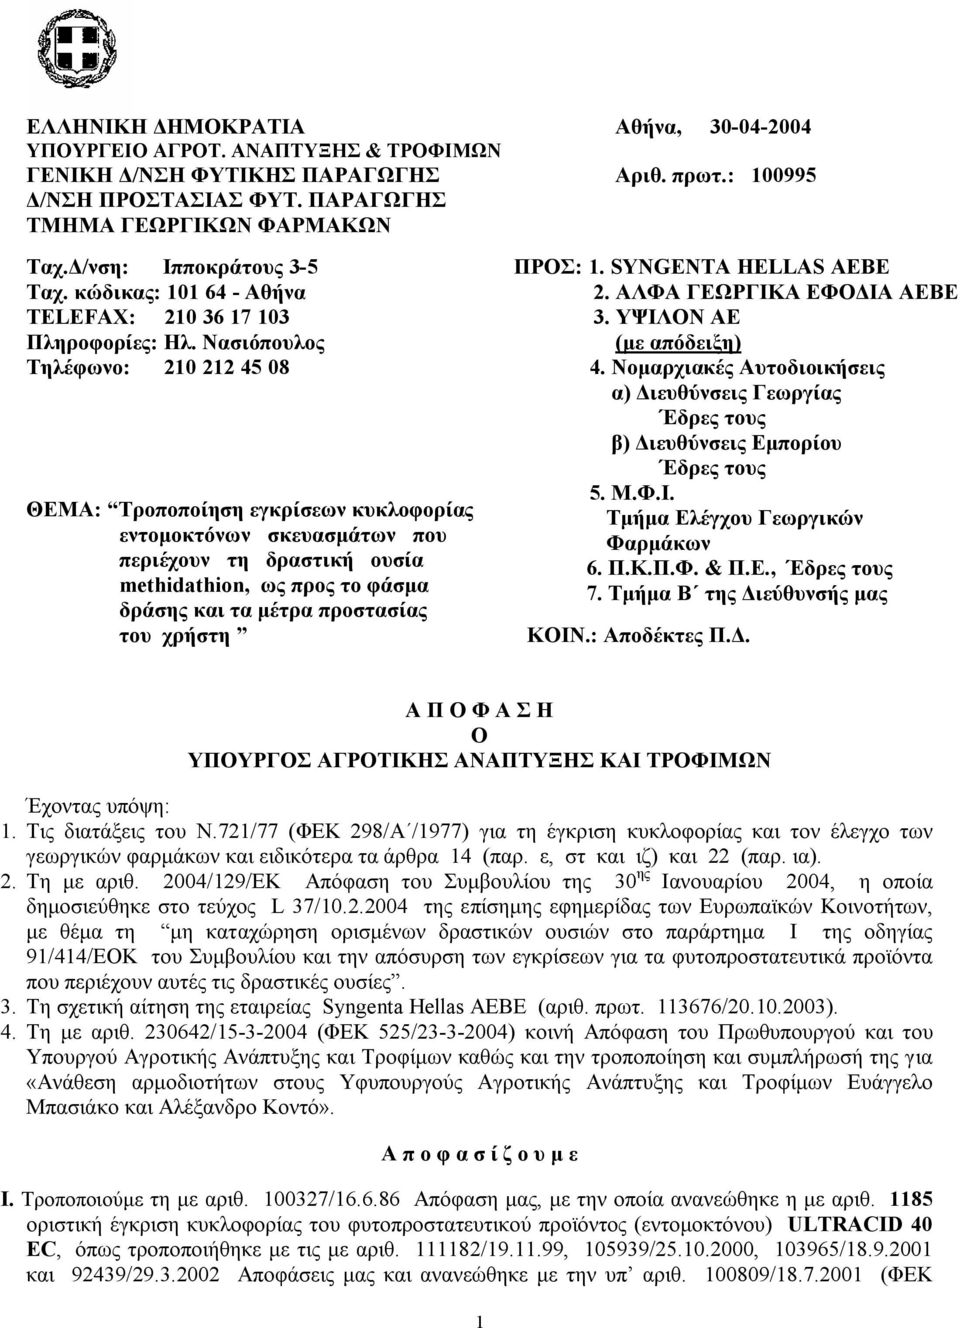 Νασιόπουλος Τηλέφωνο: 210 212 45 08 ΘΕΜΑ: Τροποποίηση εγκρίσεων κυκλοφορίας εντομοκτόνων σκευασμάτων που περιέχουν τη δραστική ουσία methidathion, ως προς το φάσμα δράσης και τα μέτρα προστασίας του